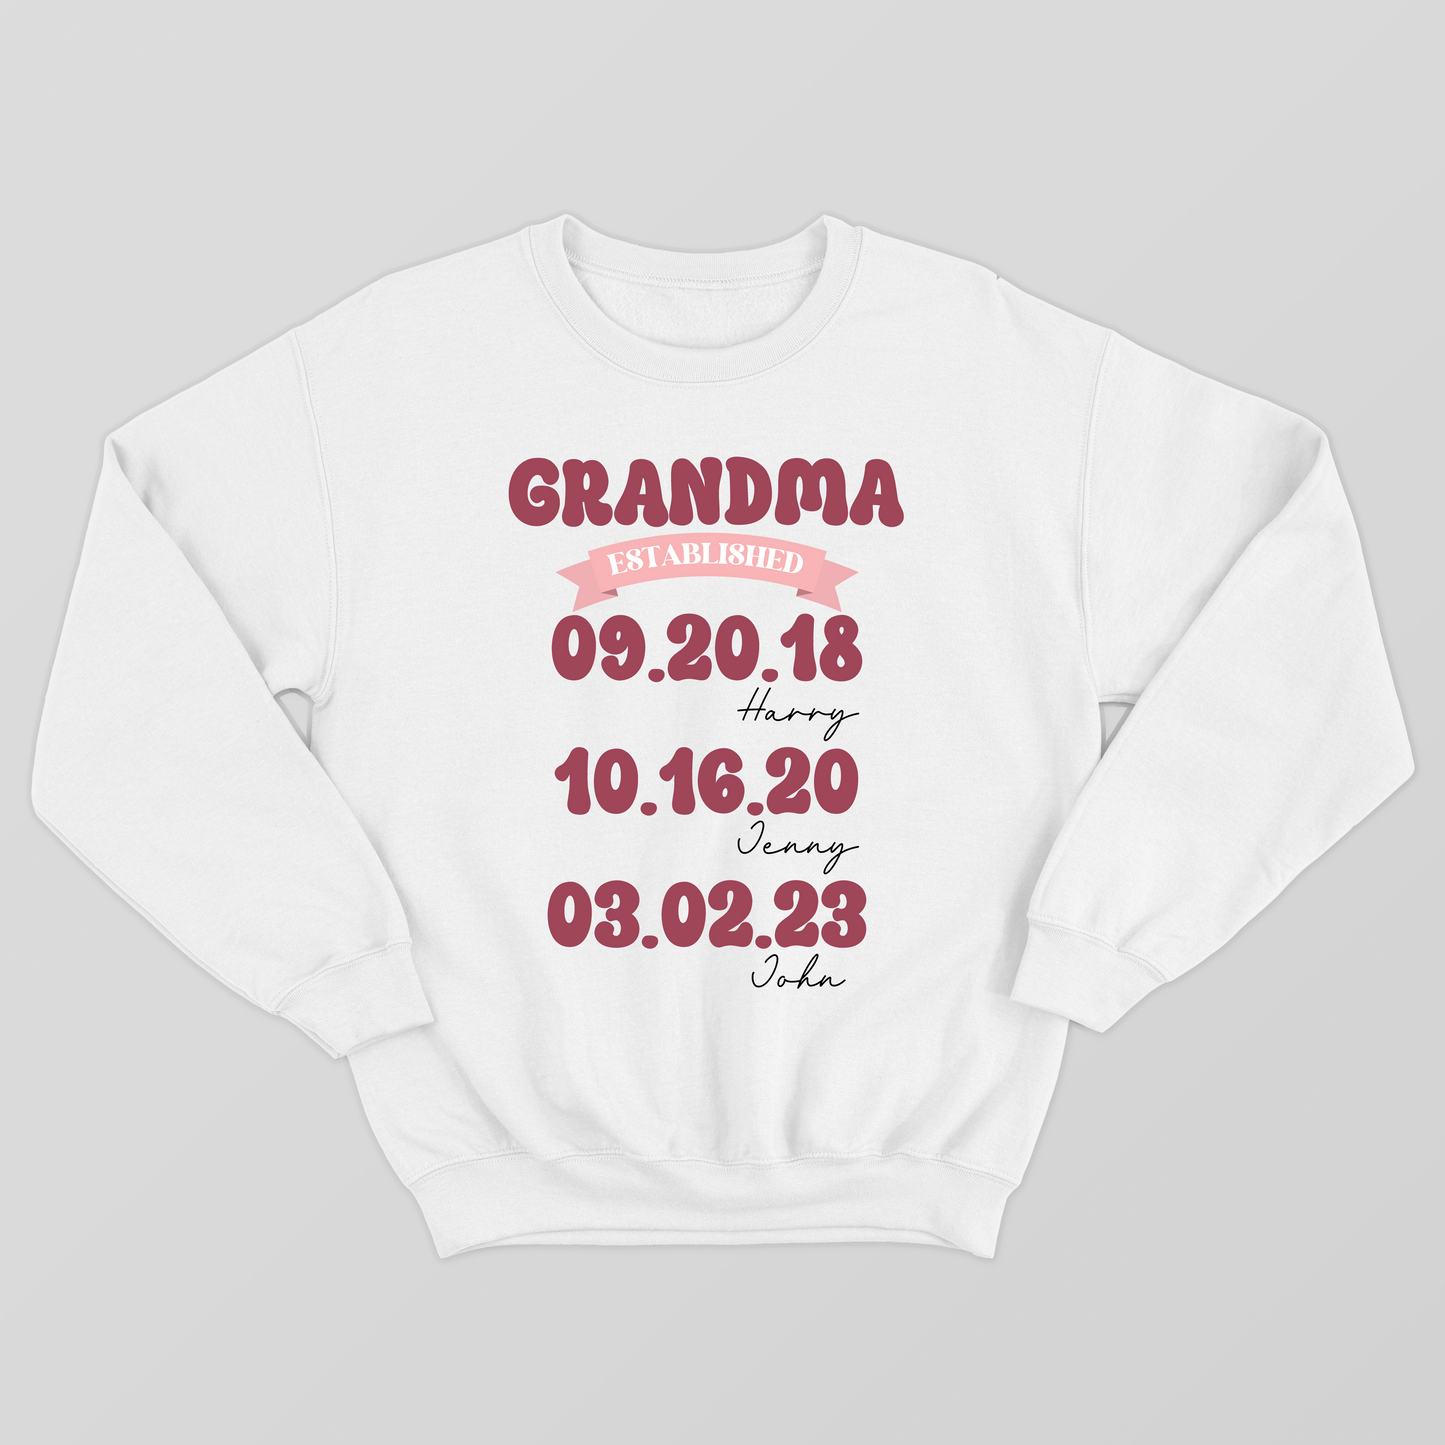 Personalized Mom Grandma Shirt, Mom Est Grandma Est Custom Tshirt, Mother's Day Gift for Grandma Tee, Grandma To Be Shirt, Mom Nana Established Tee